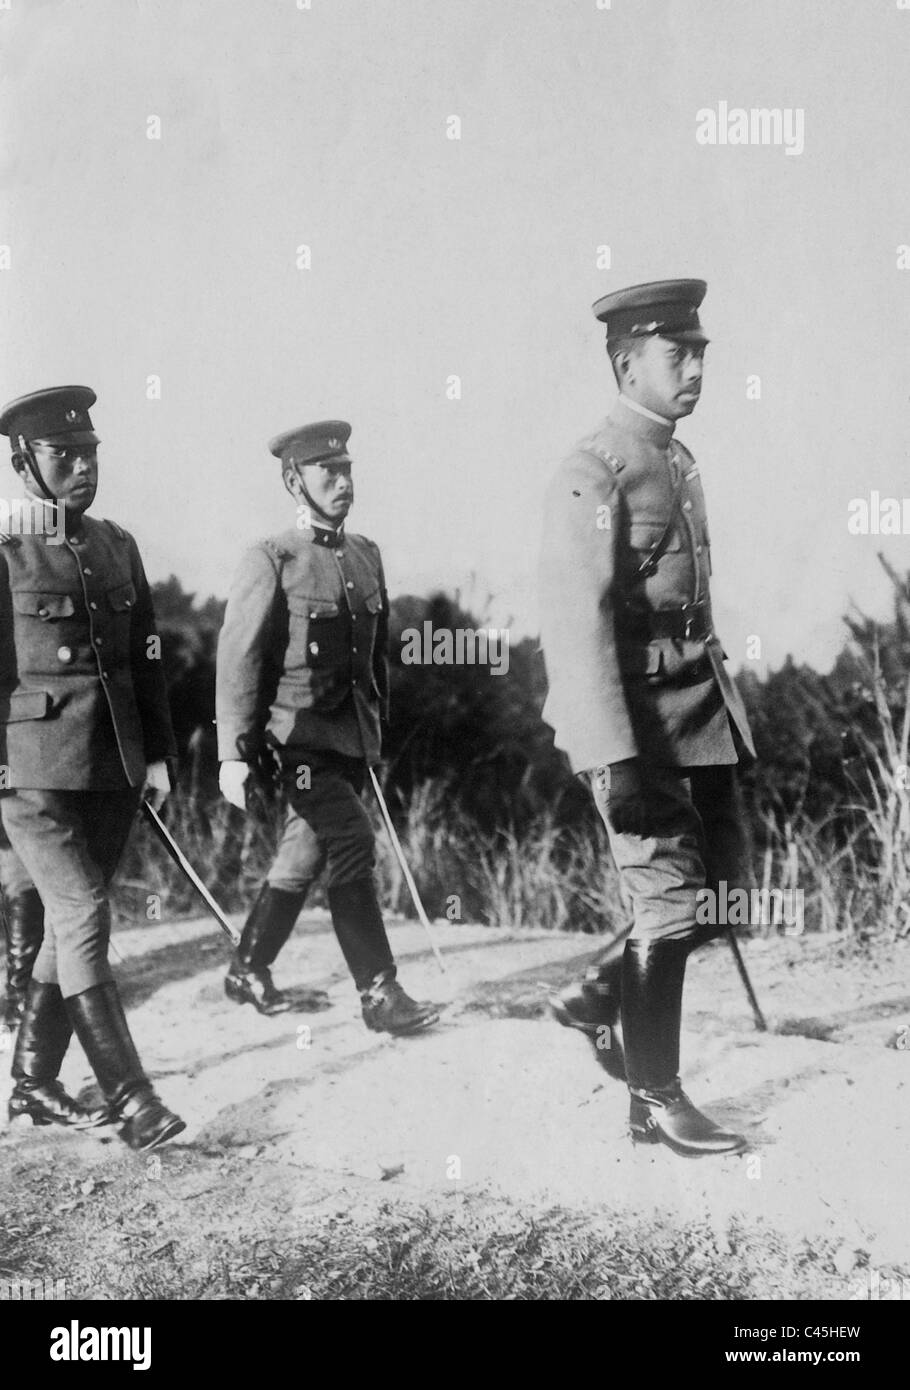 Emperor Hirohito during a maneuver Stock Photo